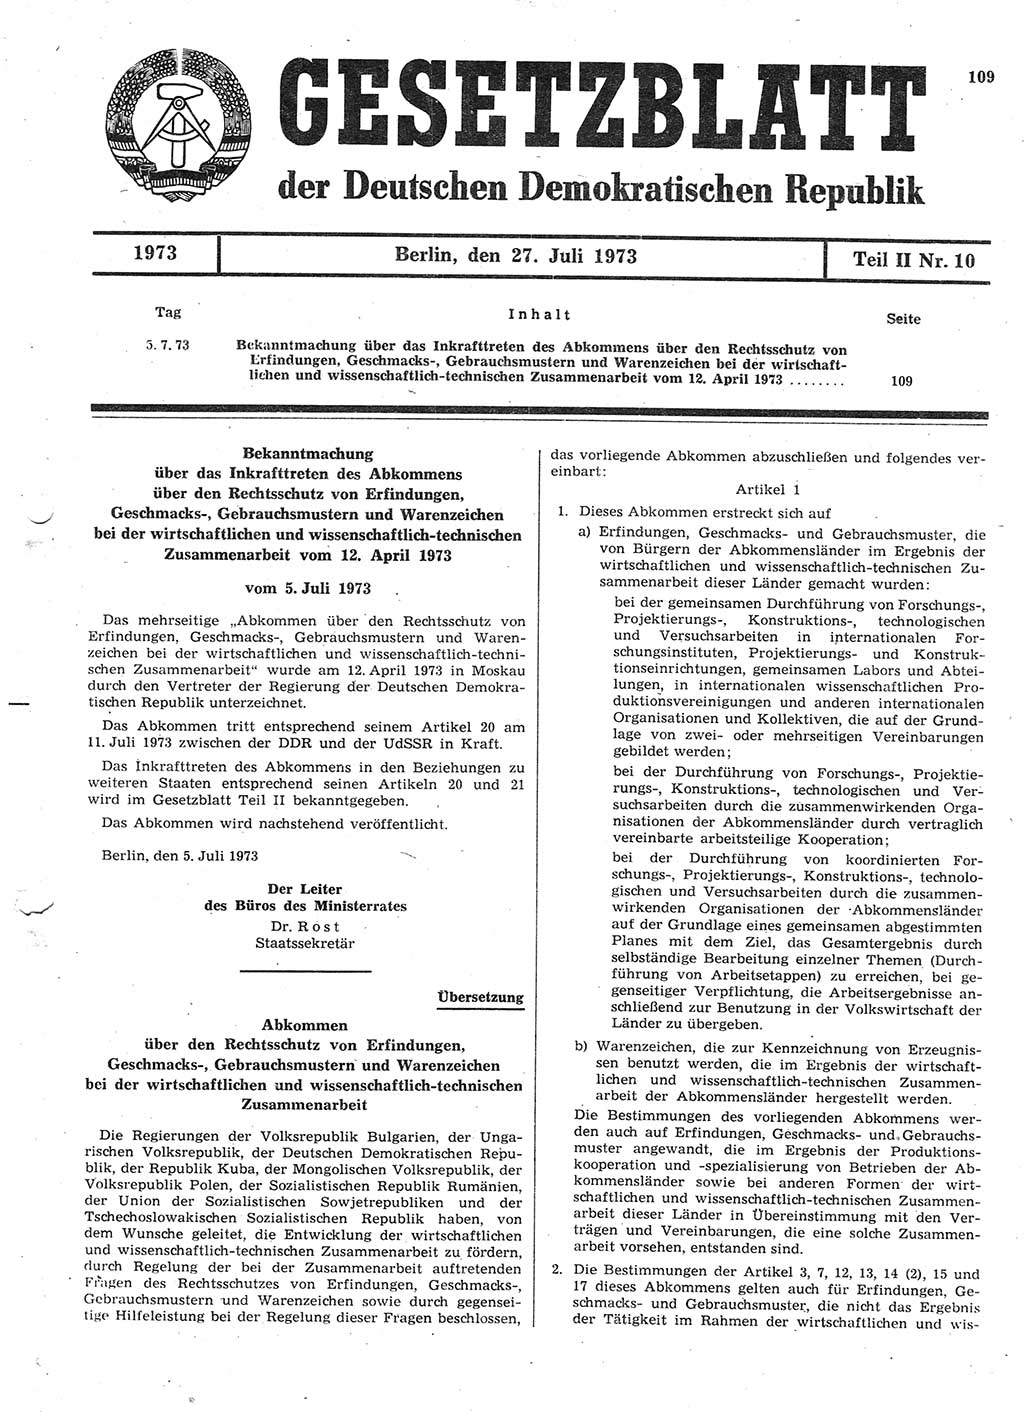 Gesetzblatt (GBl.) der Deutschen Demokratischen Republik (DDR) Teil ⅠⅠ 1973, Seite 109 (GBl. DDR ⅠⅠ 1973, S. 109)